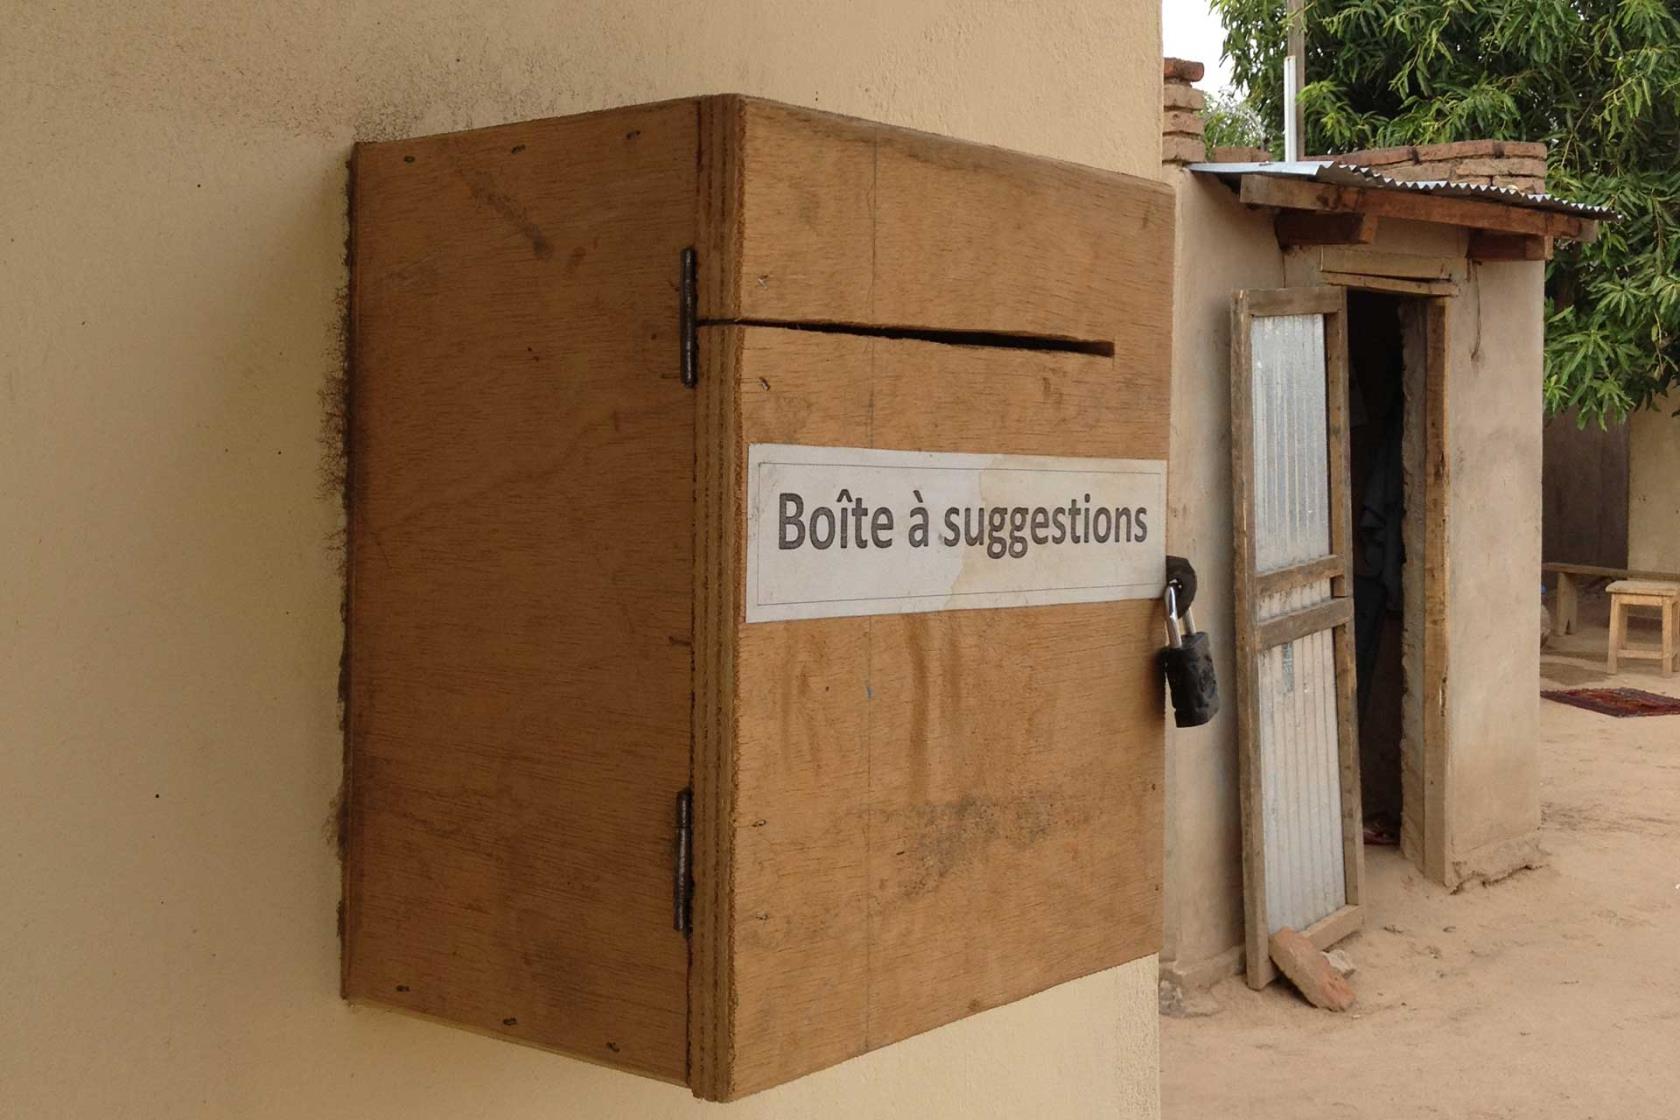 En låda med texten Boite a suggetions - förslagslåda sitter på en väg, i bakgrunden syns ett skjul.